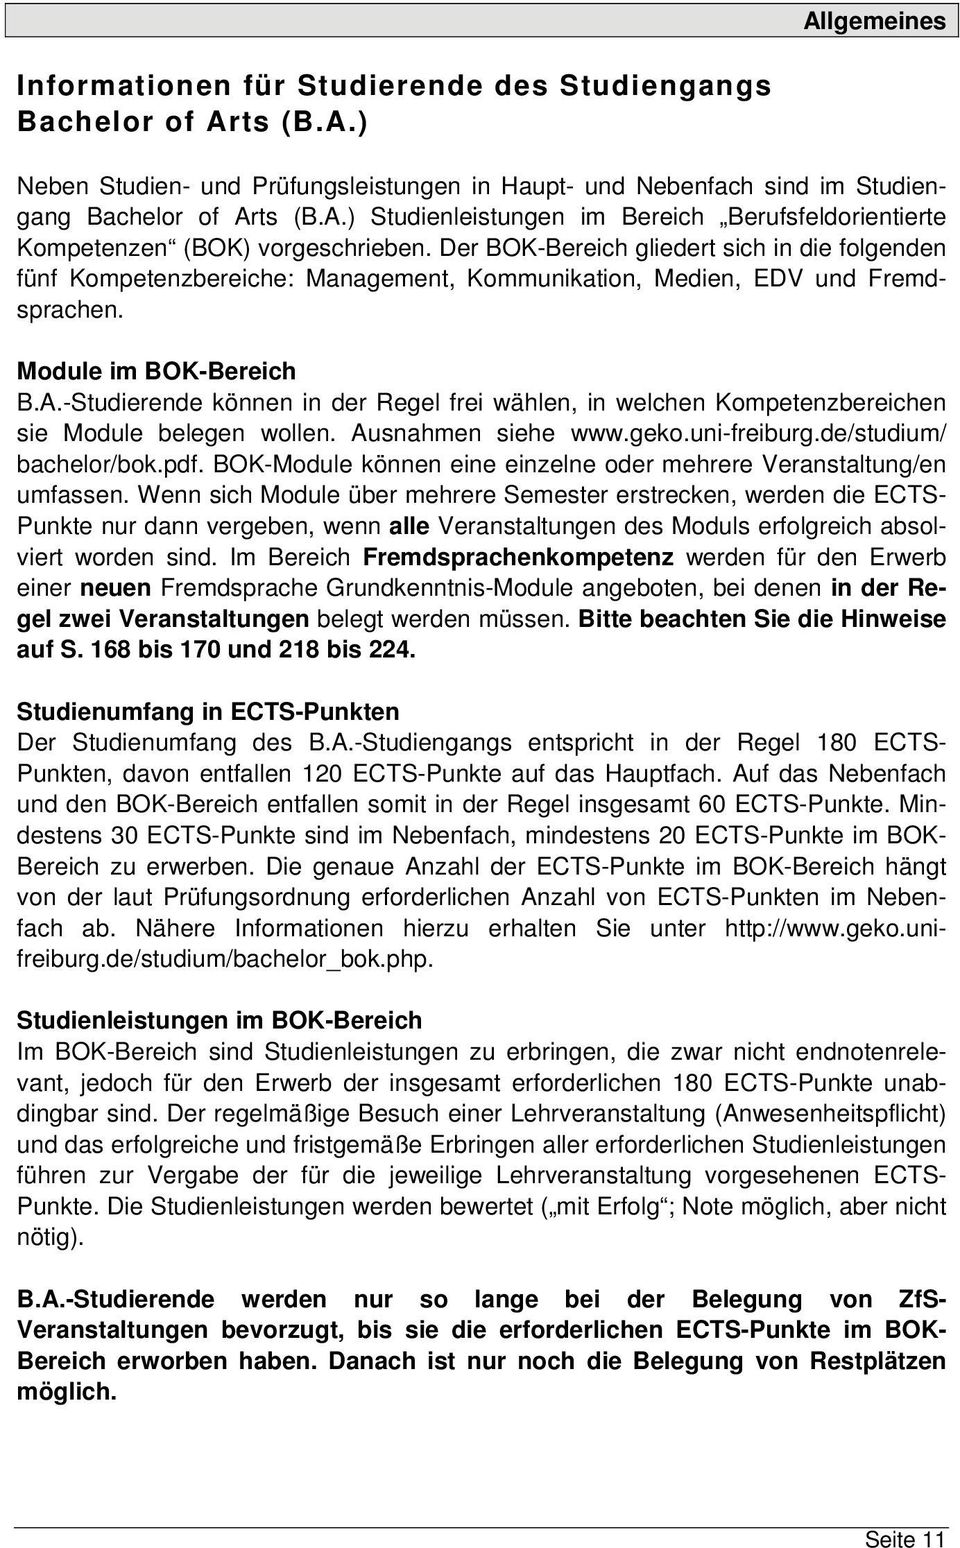 -Studierende können in der Regel frei wählen, in welchen Kompetenzbereichen sie Module belegen wollen. Ausnahmen siehe www.geko.uni-freiburg.de/studium/ bachelor/bok.pdf.